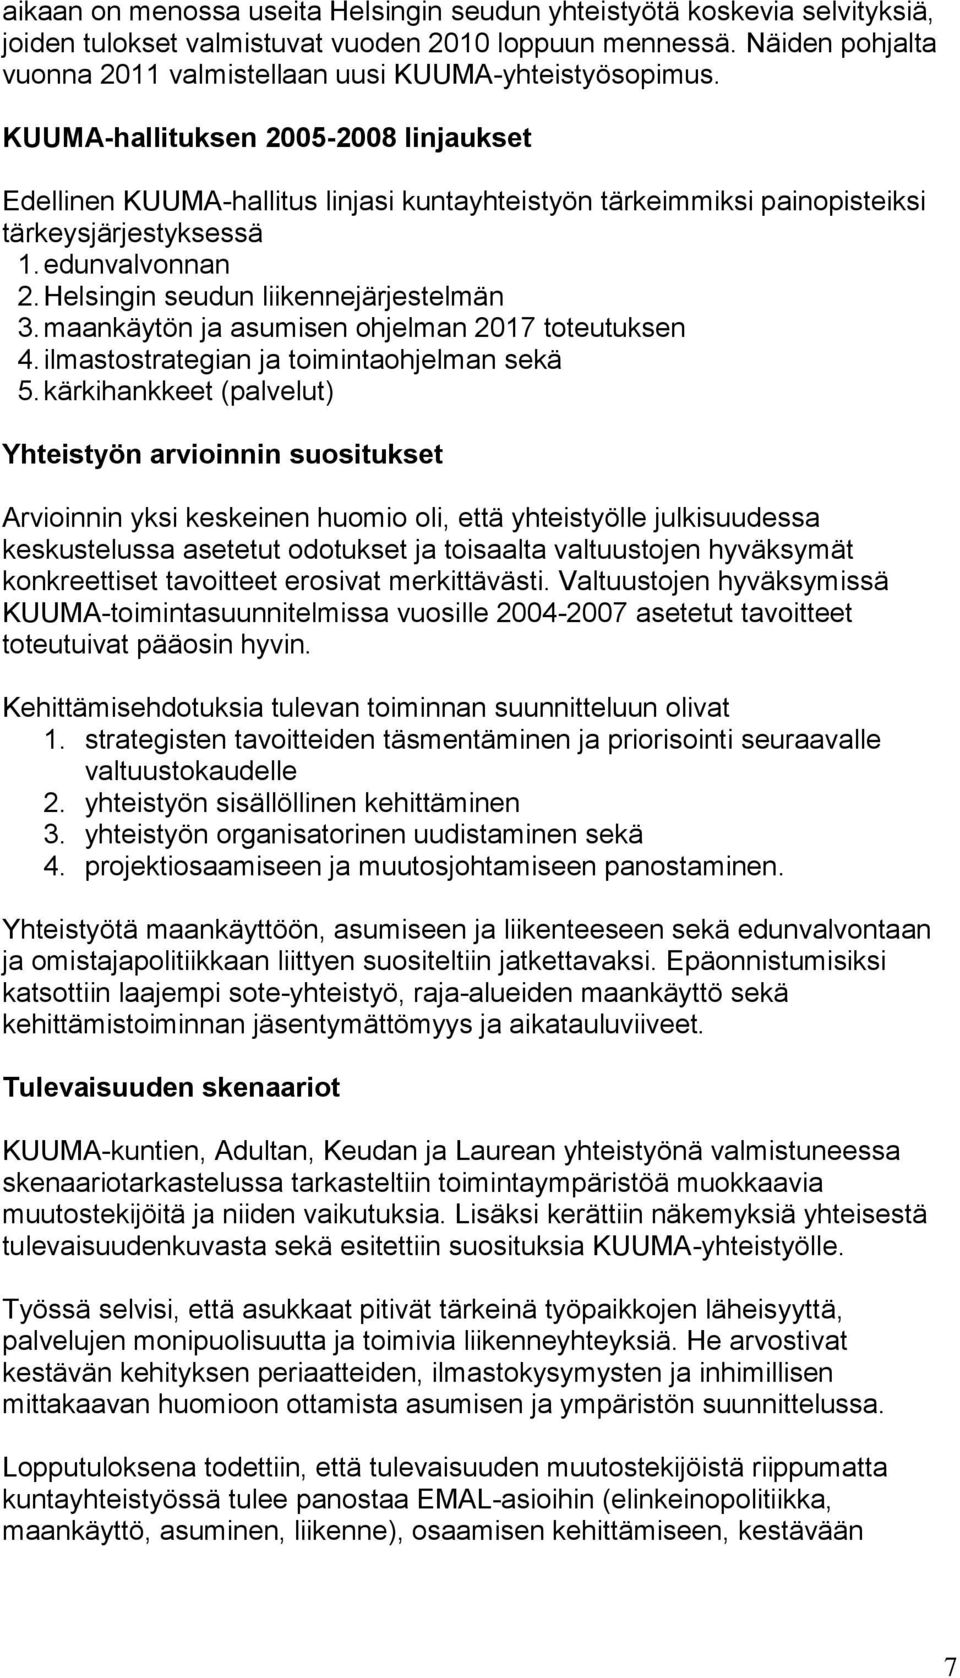 KUUMA-hallituksen 2005-2008 linjaukset Edellinen KUUMA-hallitus linjasi kuntayhteistyön tärkeimmiksi painopisteiksi tärkeysjärjestyksessä 1. edunvalvonnan 2. Helsingin seudun liikennejärjestelmän 3.